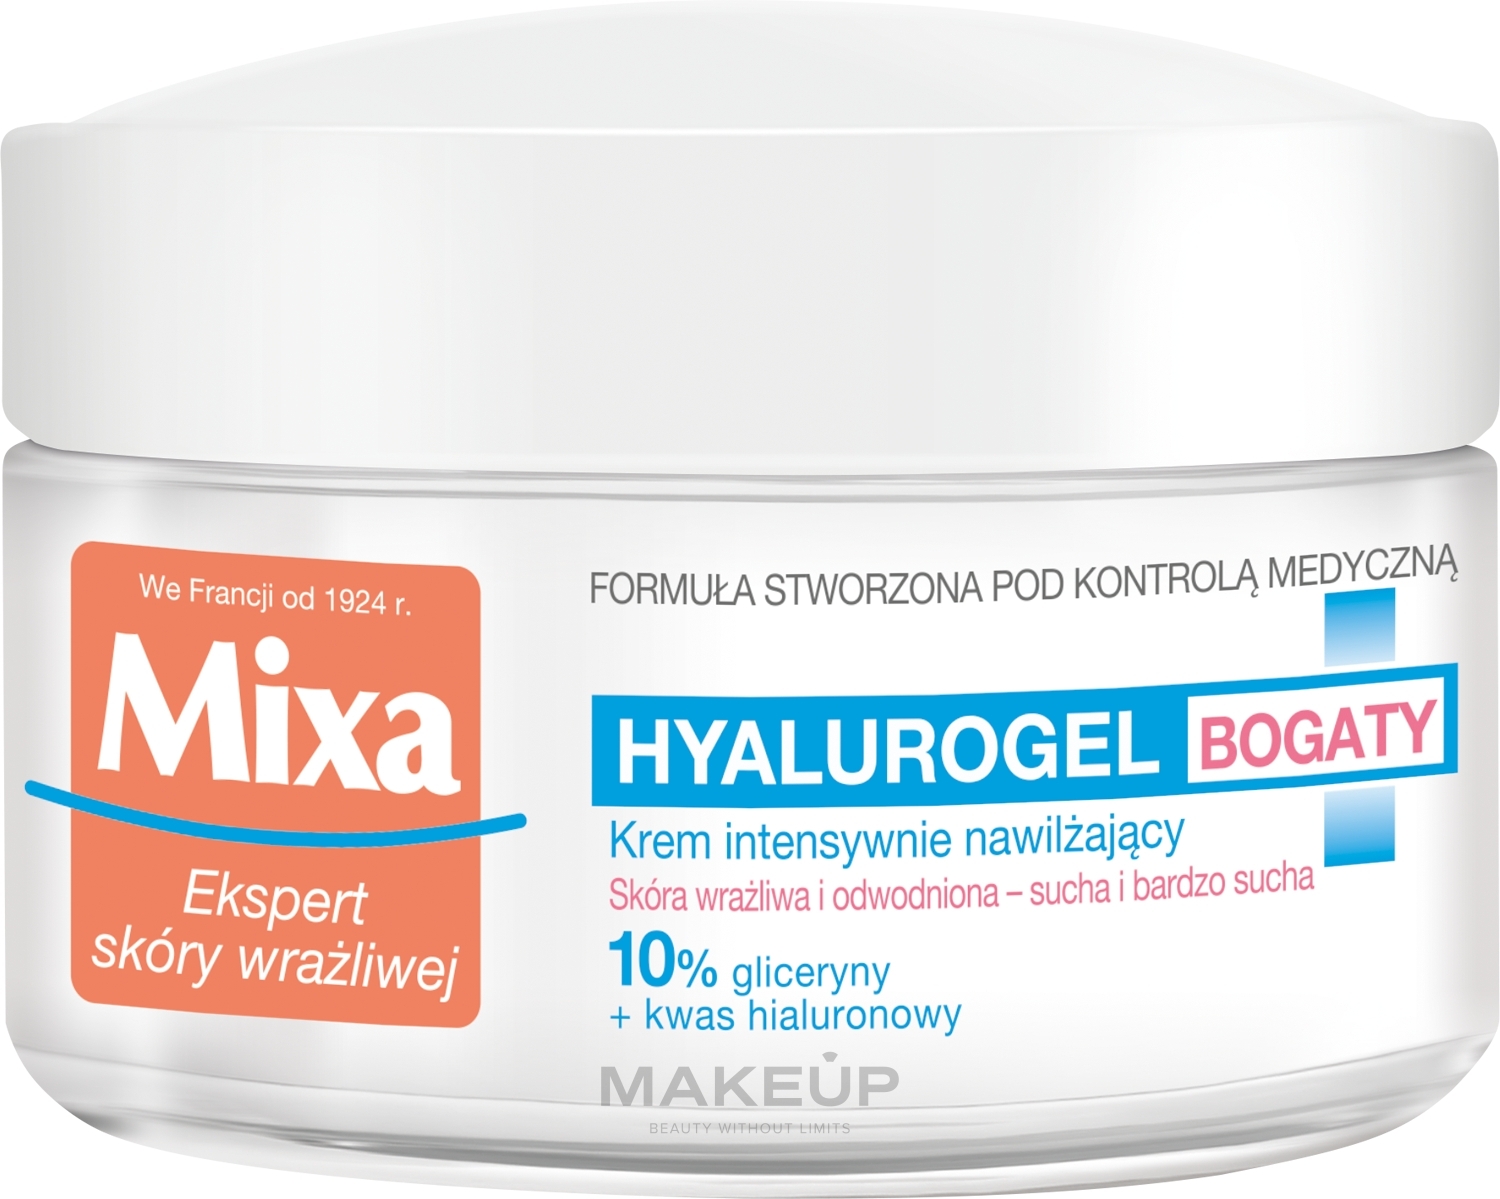 Feuchtigkeitsspendende Gesichtscreme - Mixa Hyalurogel Moisturizing Face Cream — Foto 50 ml